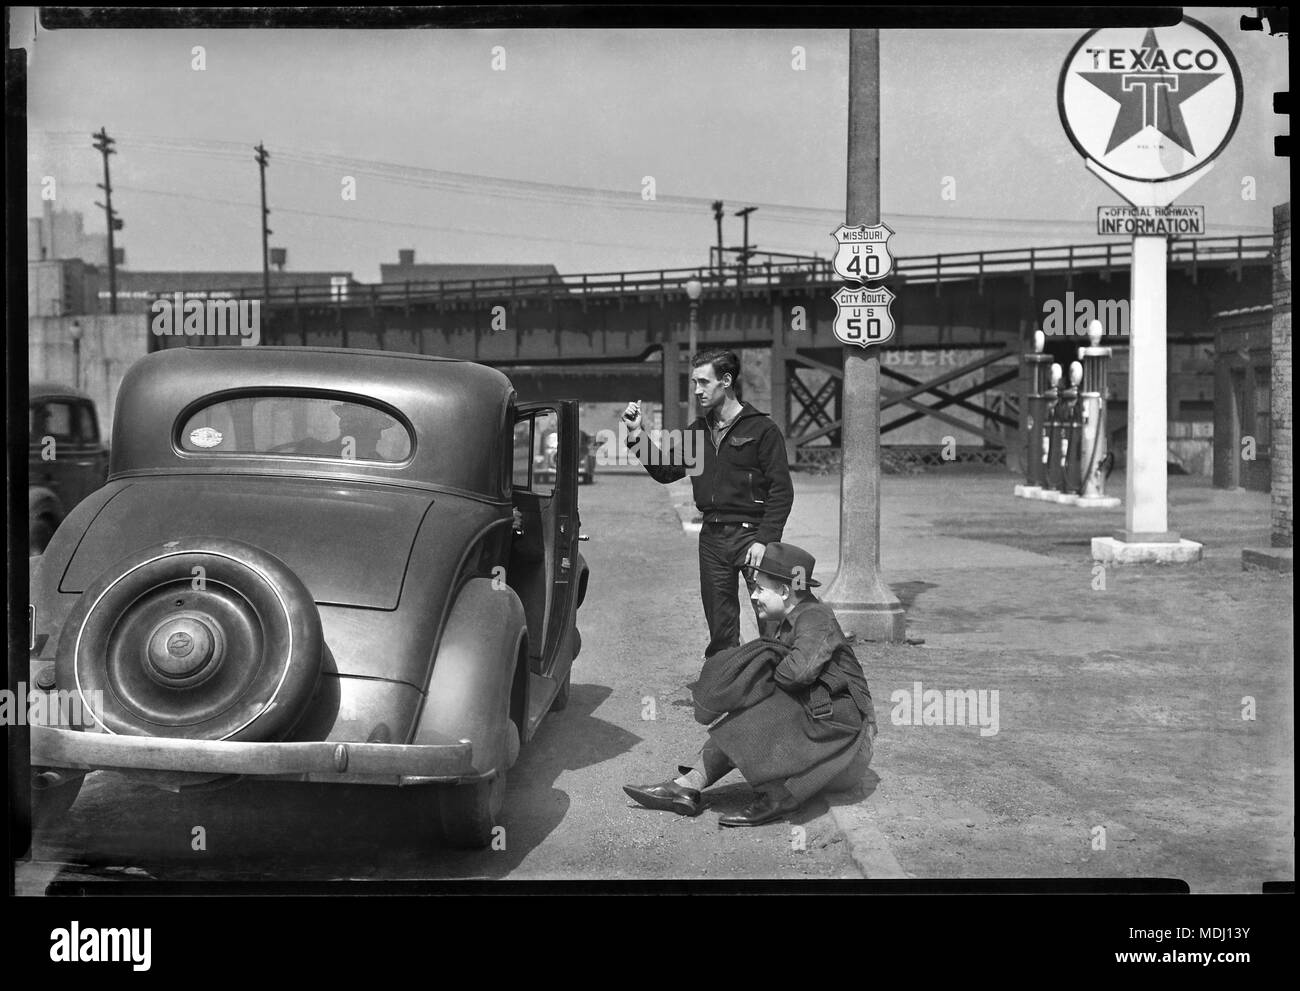 Un misterioso guidatore apre la portiera della macchina per due uomini autostop in Kansas City, Kansas. Immagine da 5x7 pollici fotocamera negativo, circa 1934. Foto Stock